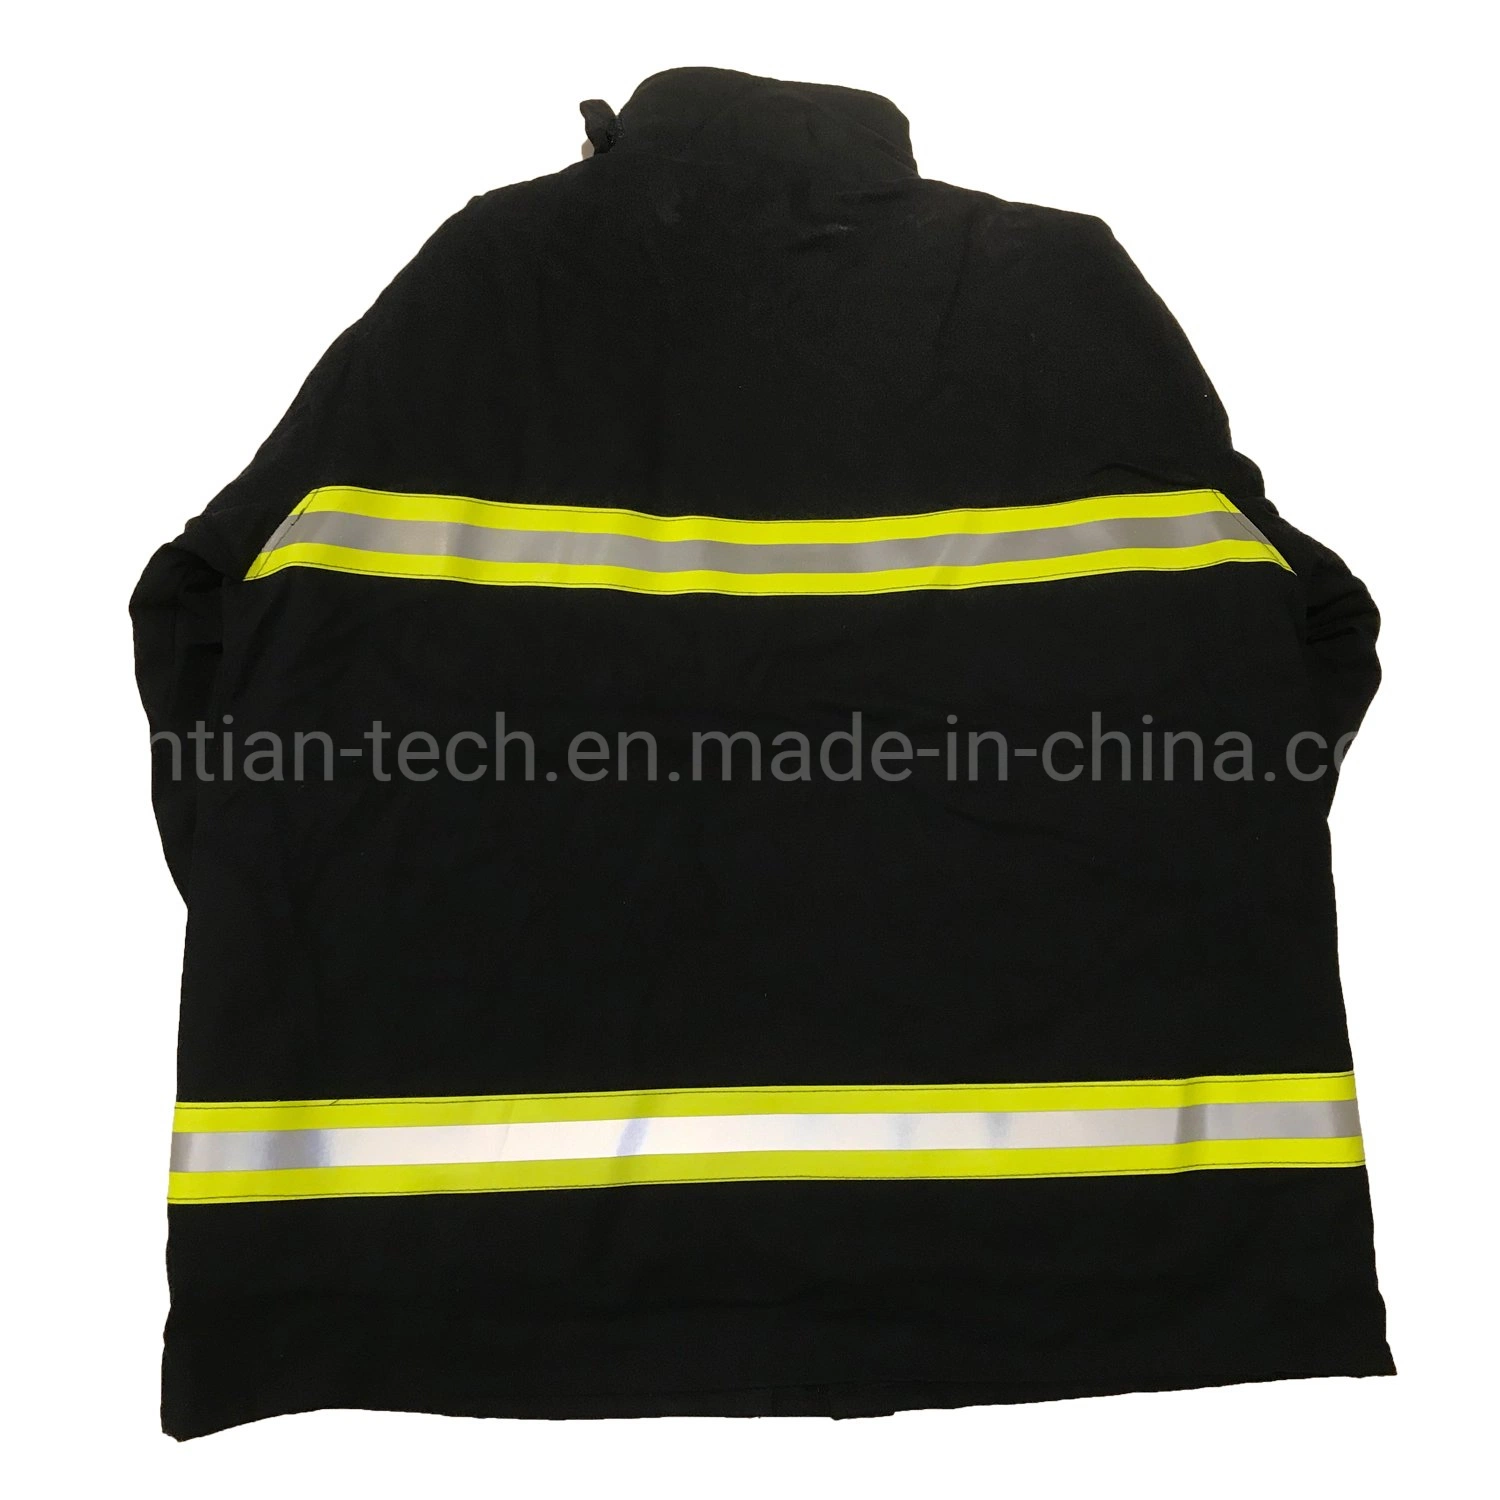 Вызывные станции защитный корпус из негорючего материала пожарных одежды для пожарной профессиональной подготовки